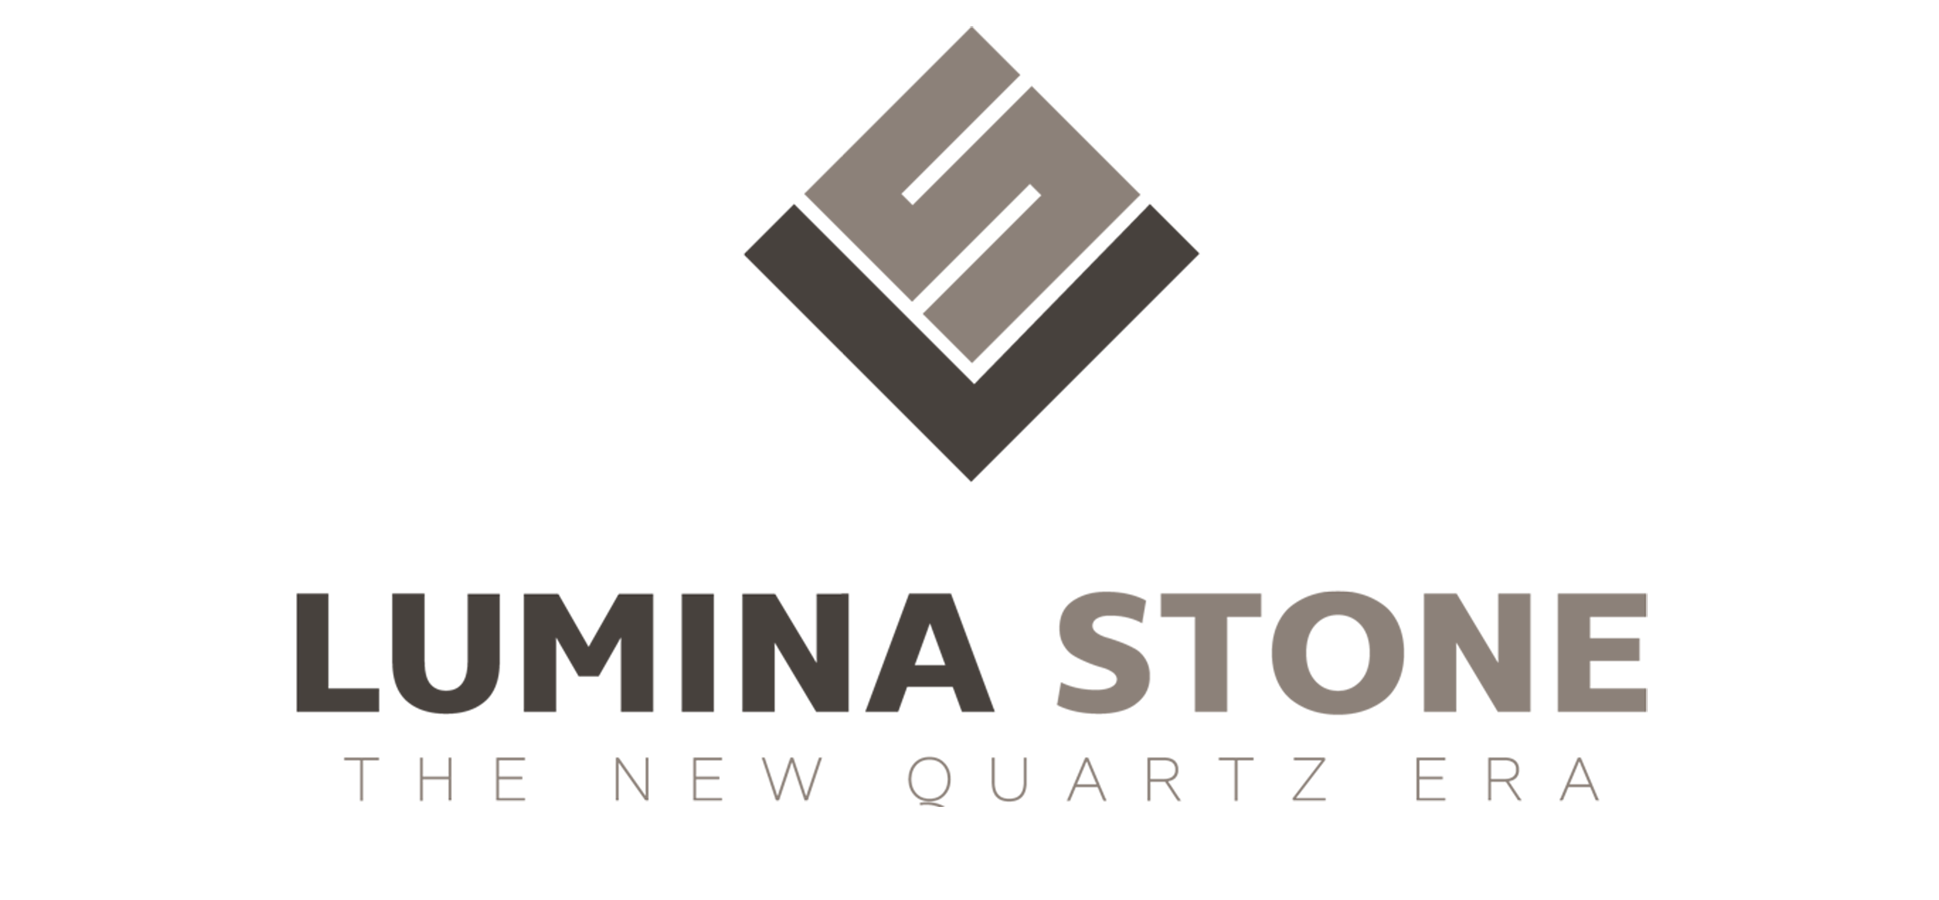 Lumina Stone Logo